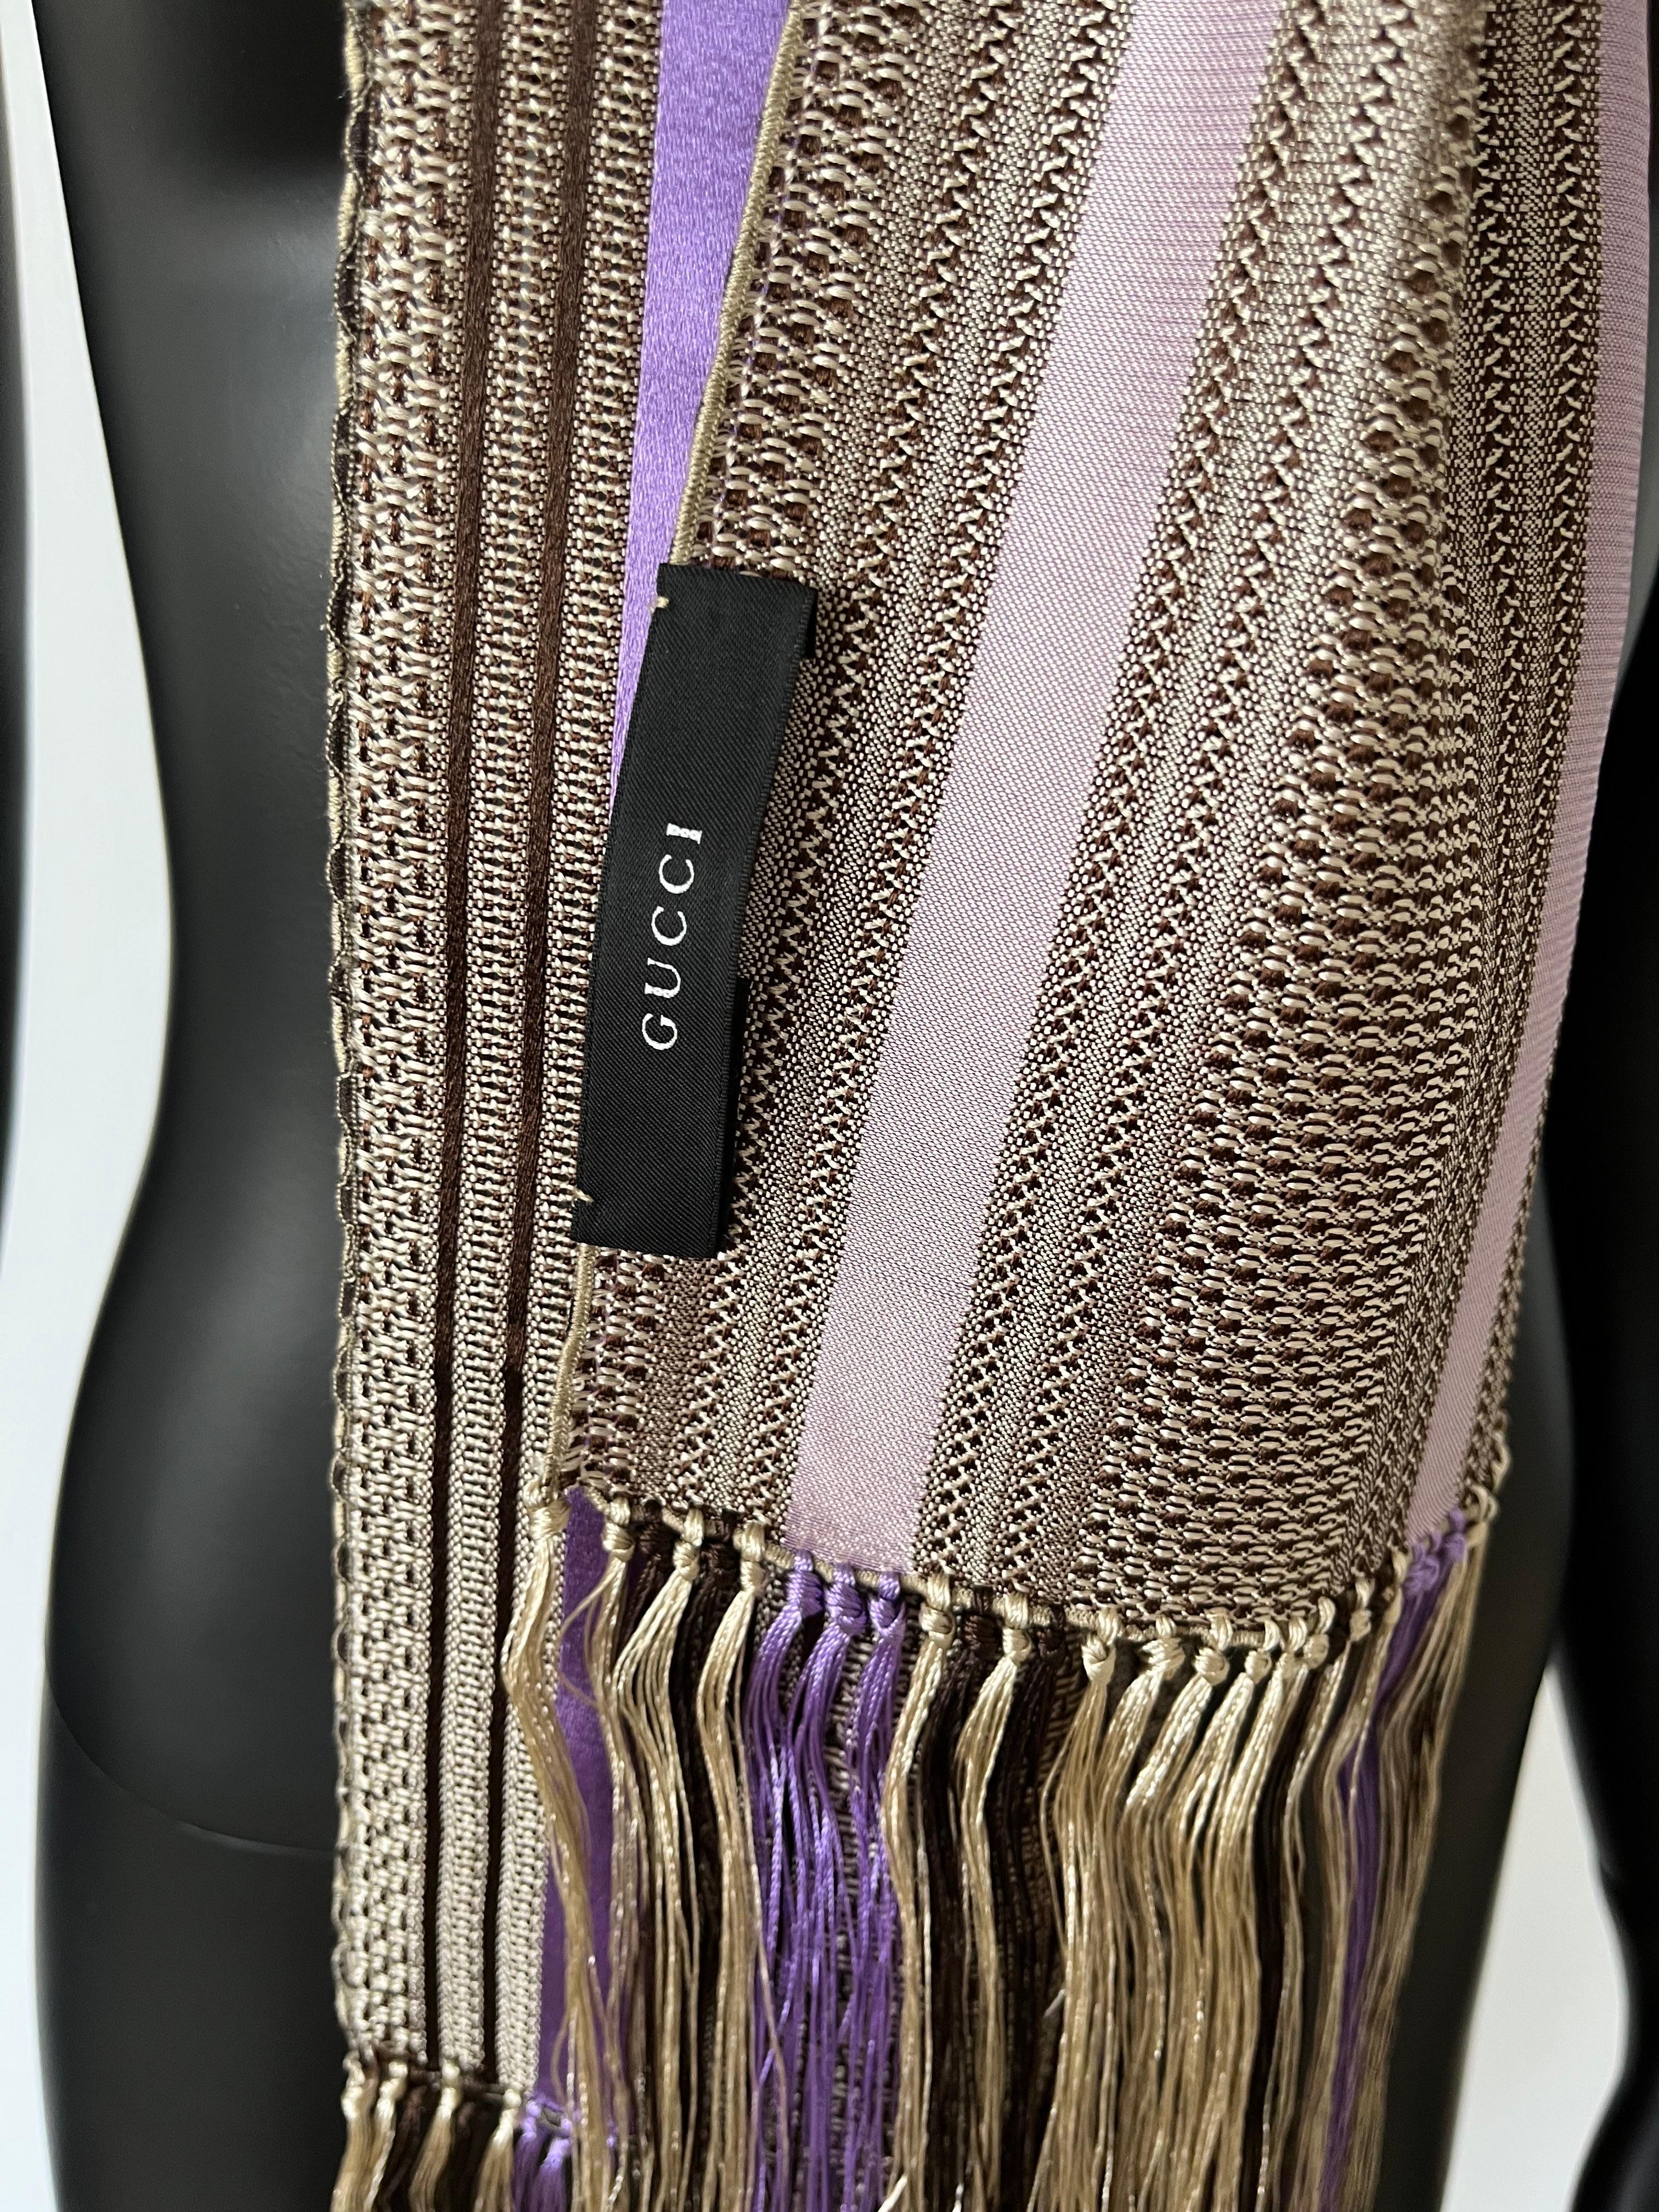 Magnifique et rare écharpe à pompons rayée Tom Ford for Gucci. Dans l'emballage d'origine.

Excellent état.